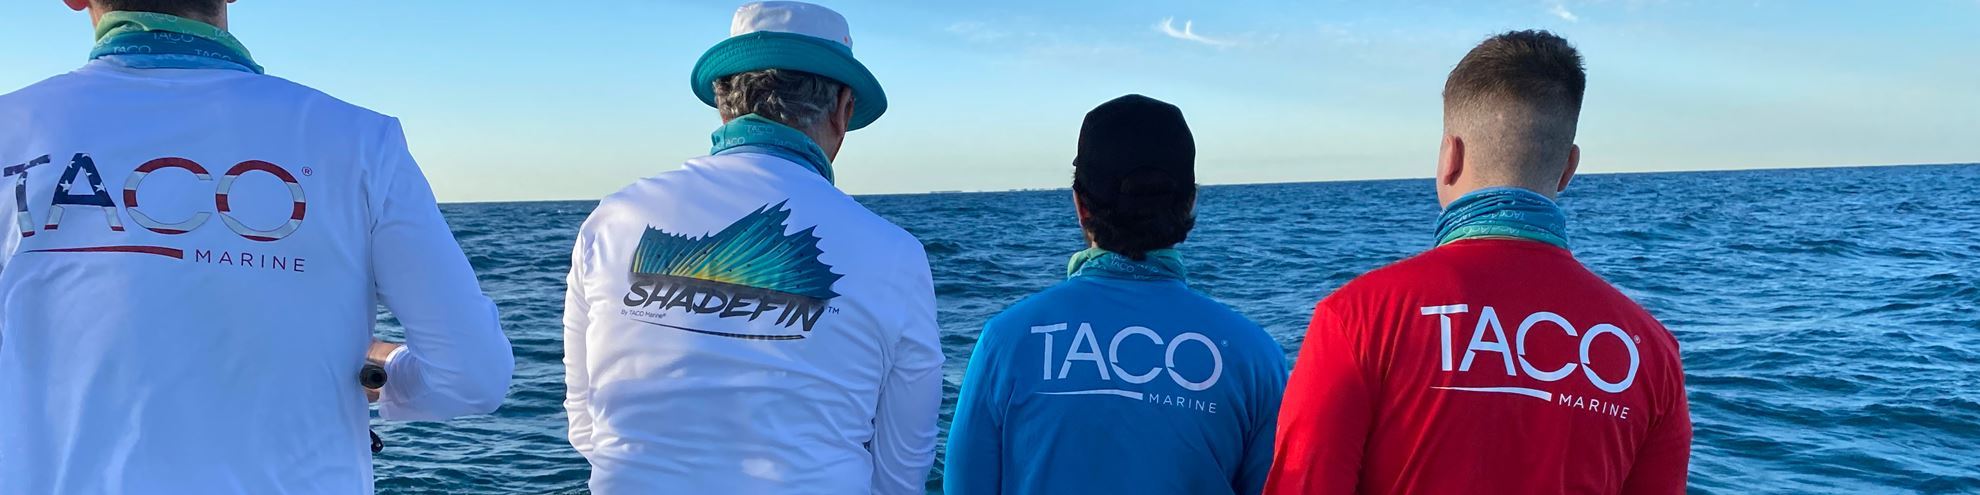 taco-gear-shadefin-shirts